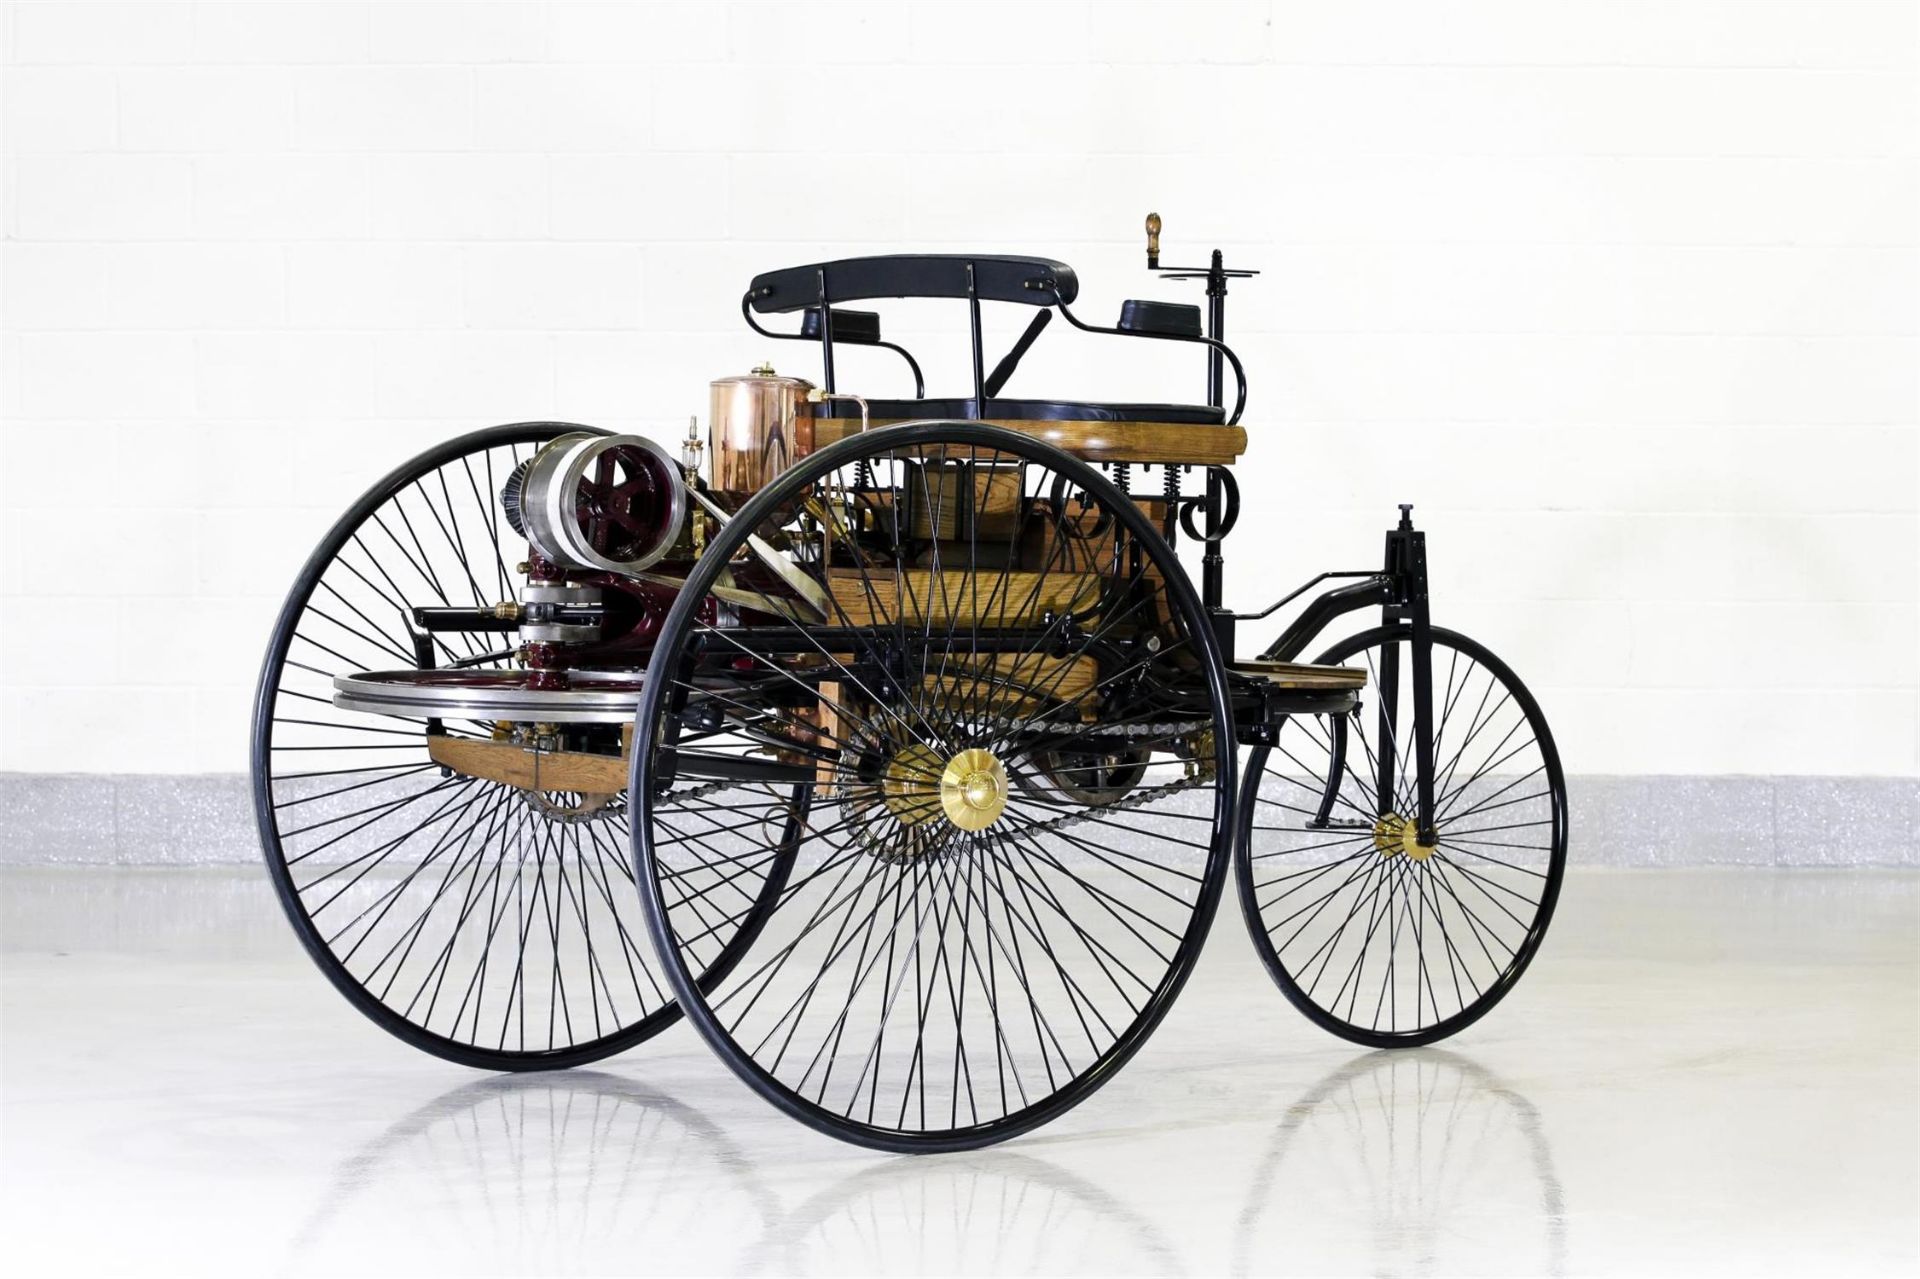 1886 Benz Patent-Motorwagen Replica - Image 4 of 10